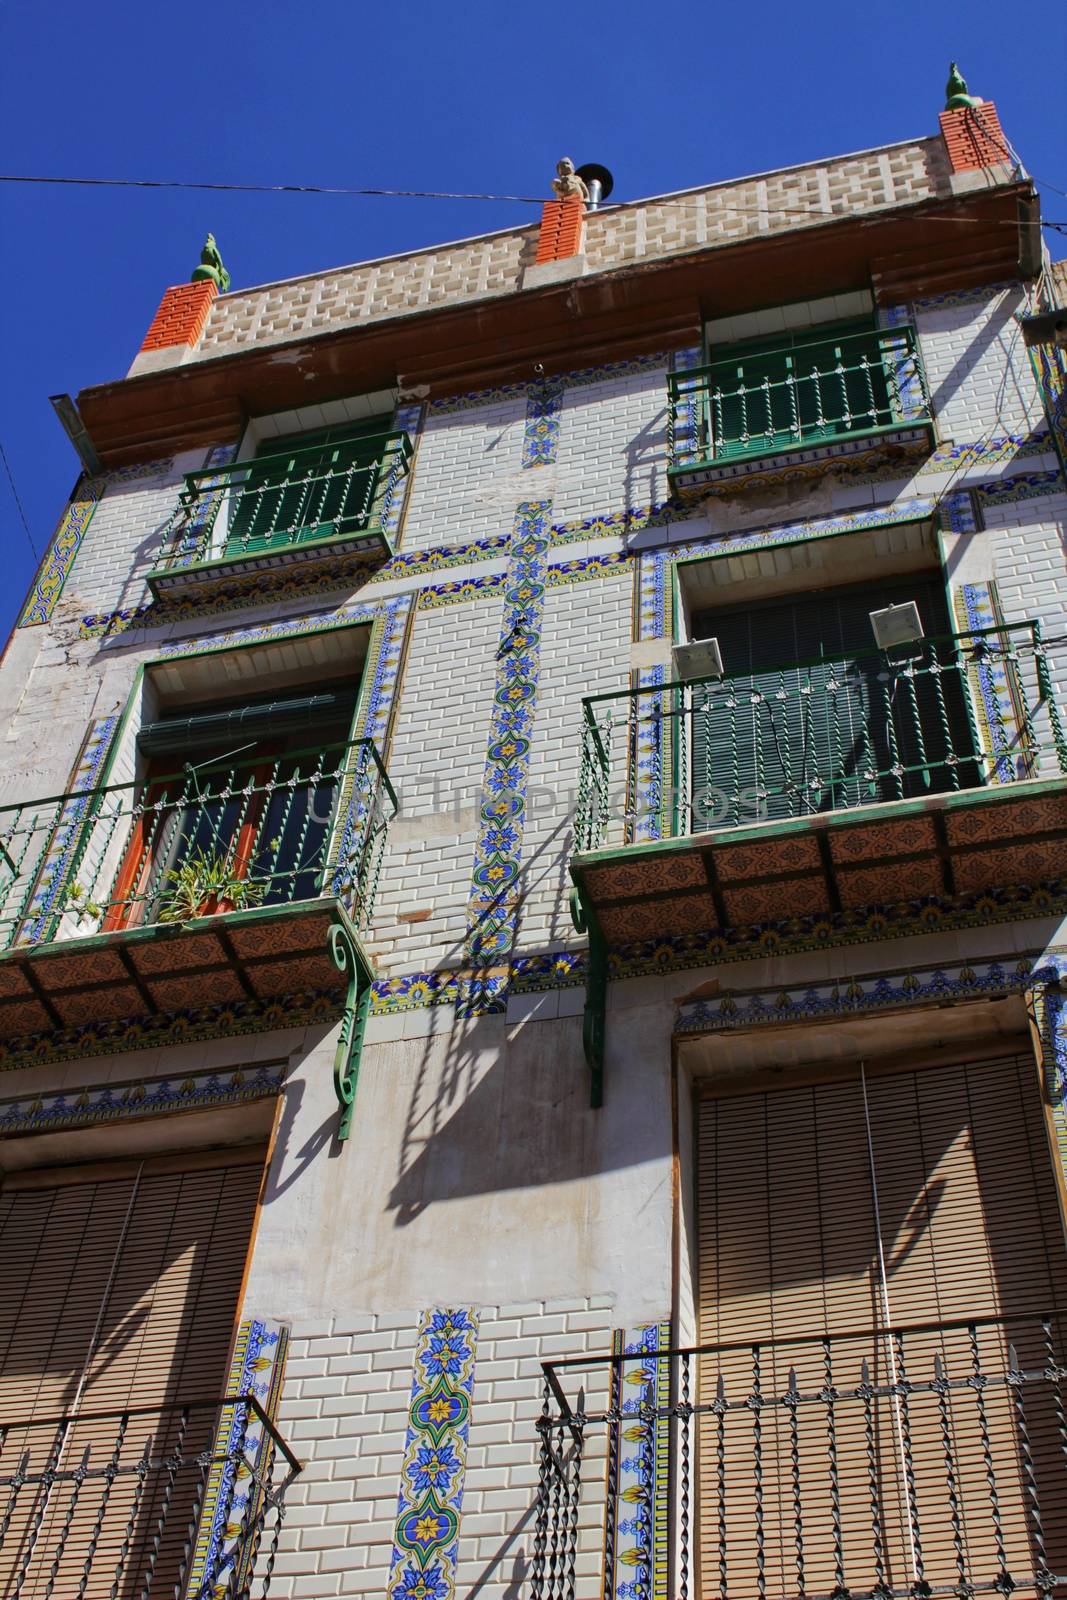 Colorful and majestic old house facade in Caravaca de la Cruz, Murcia, Spain by soniabonet